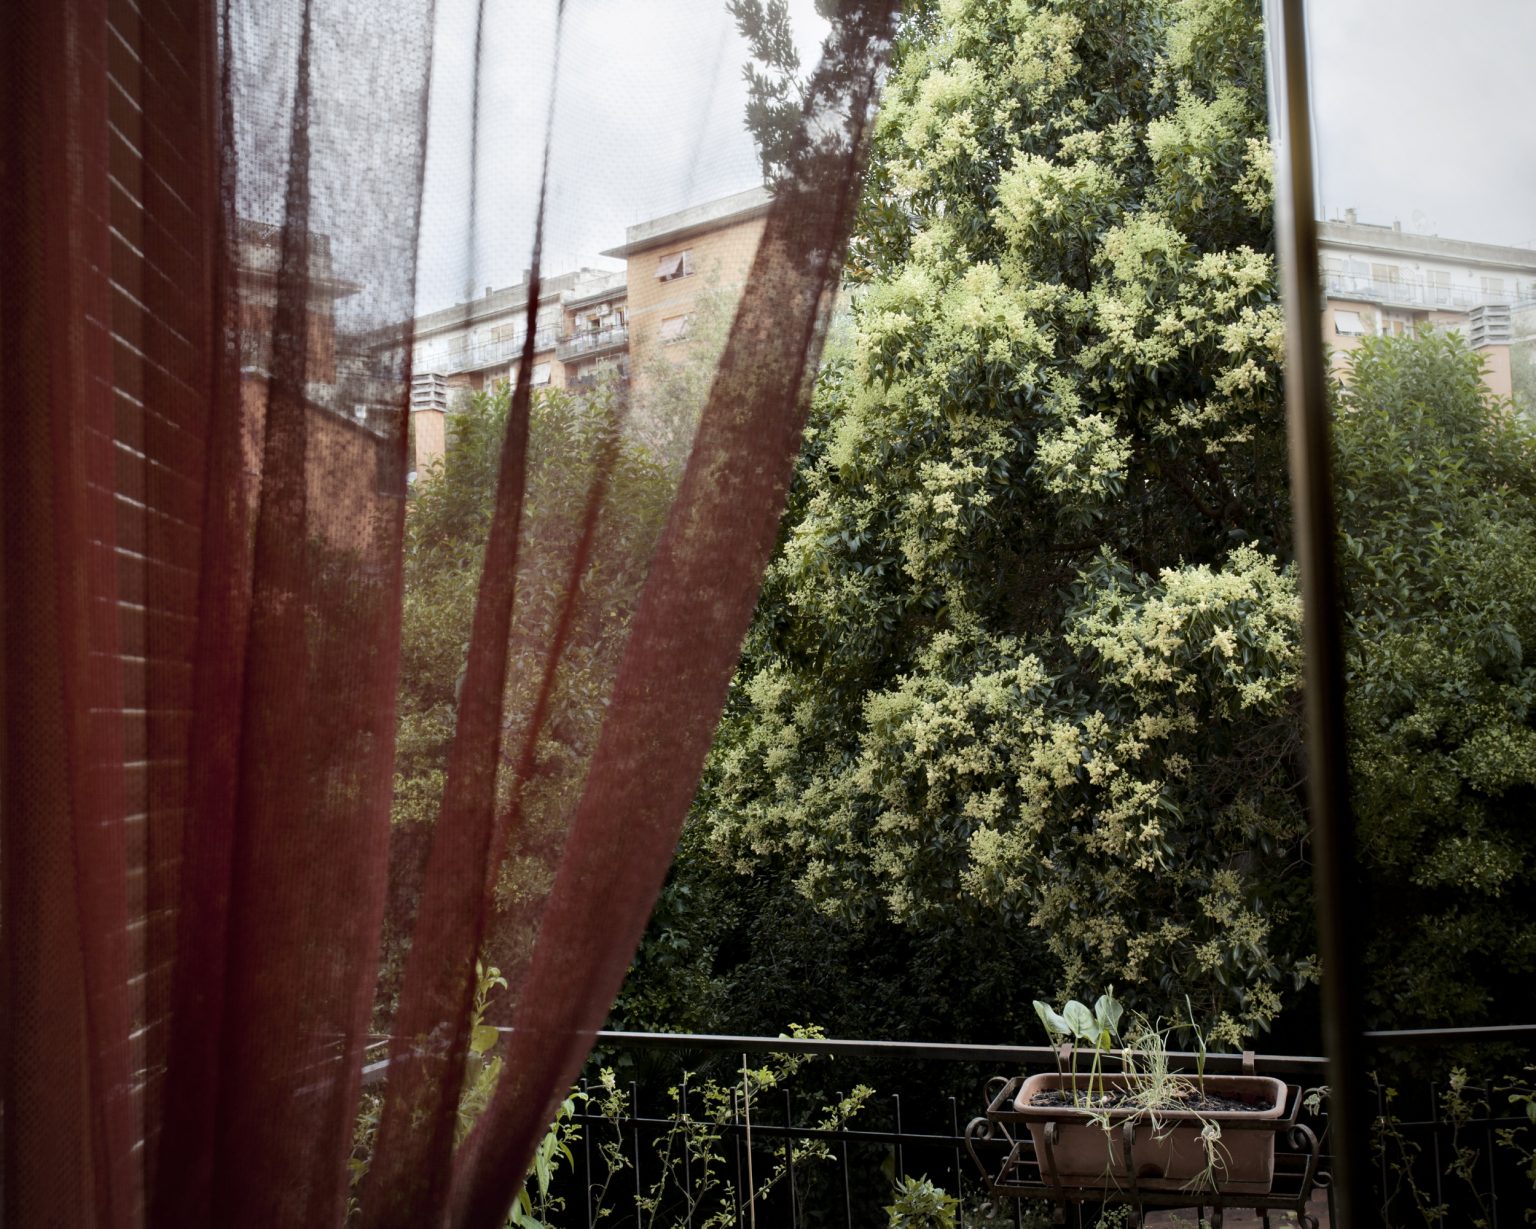 Rome, June 2014 - Pigneto district. Inner garden facing via del Pigneto
><
Roma, giugno 2014 - Pigneto. Giarino interno che affaccia su via del Pigneto.